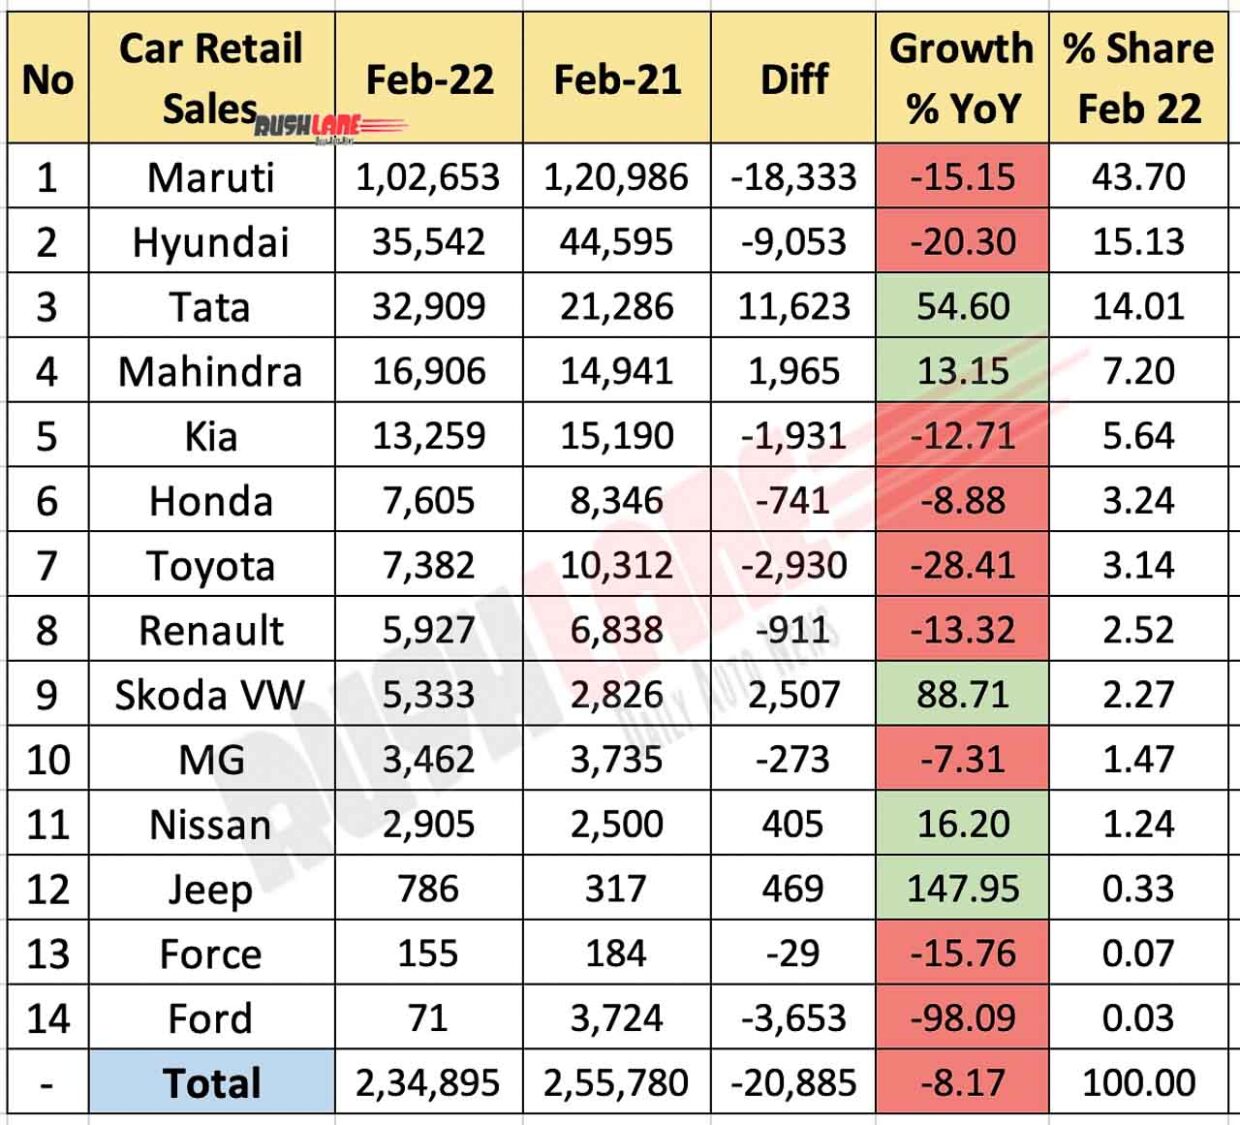 Car Retail Sales Feb 2022 vs Feb 2021 (YoY)